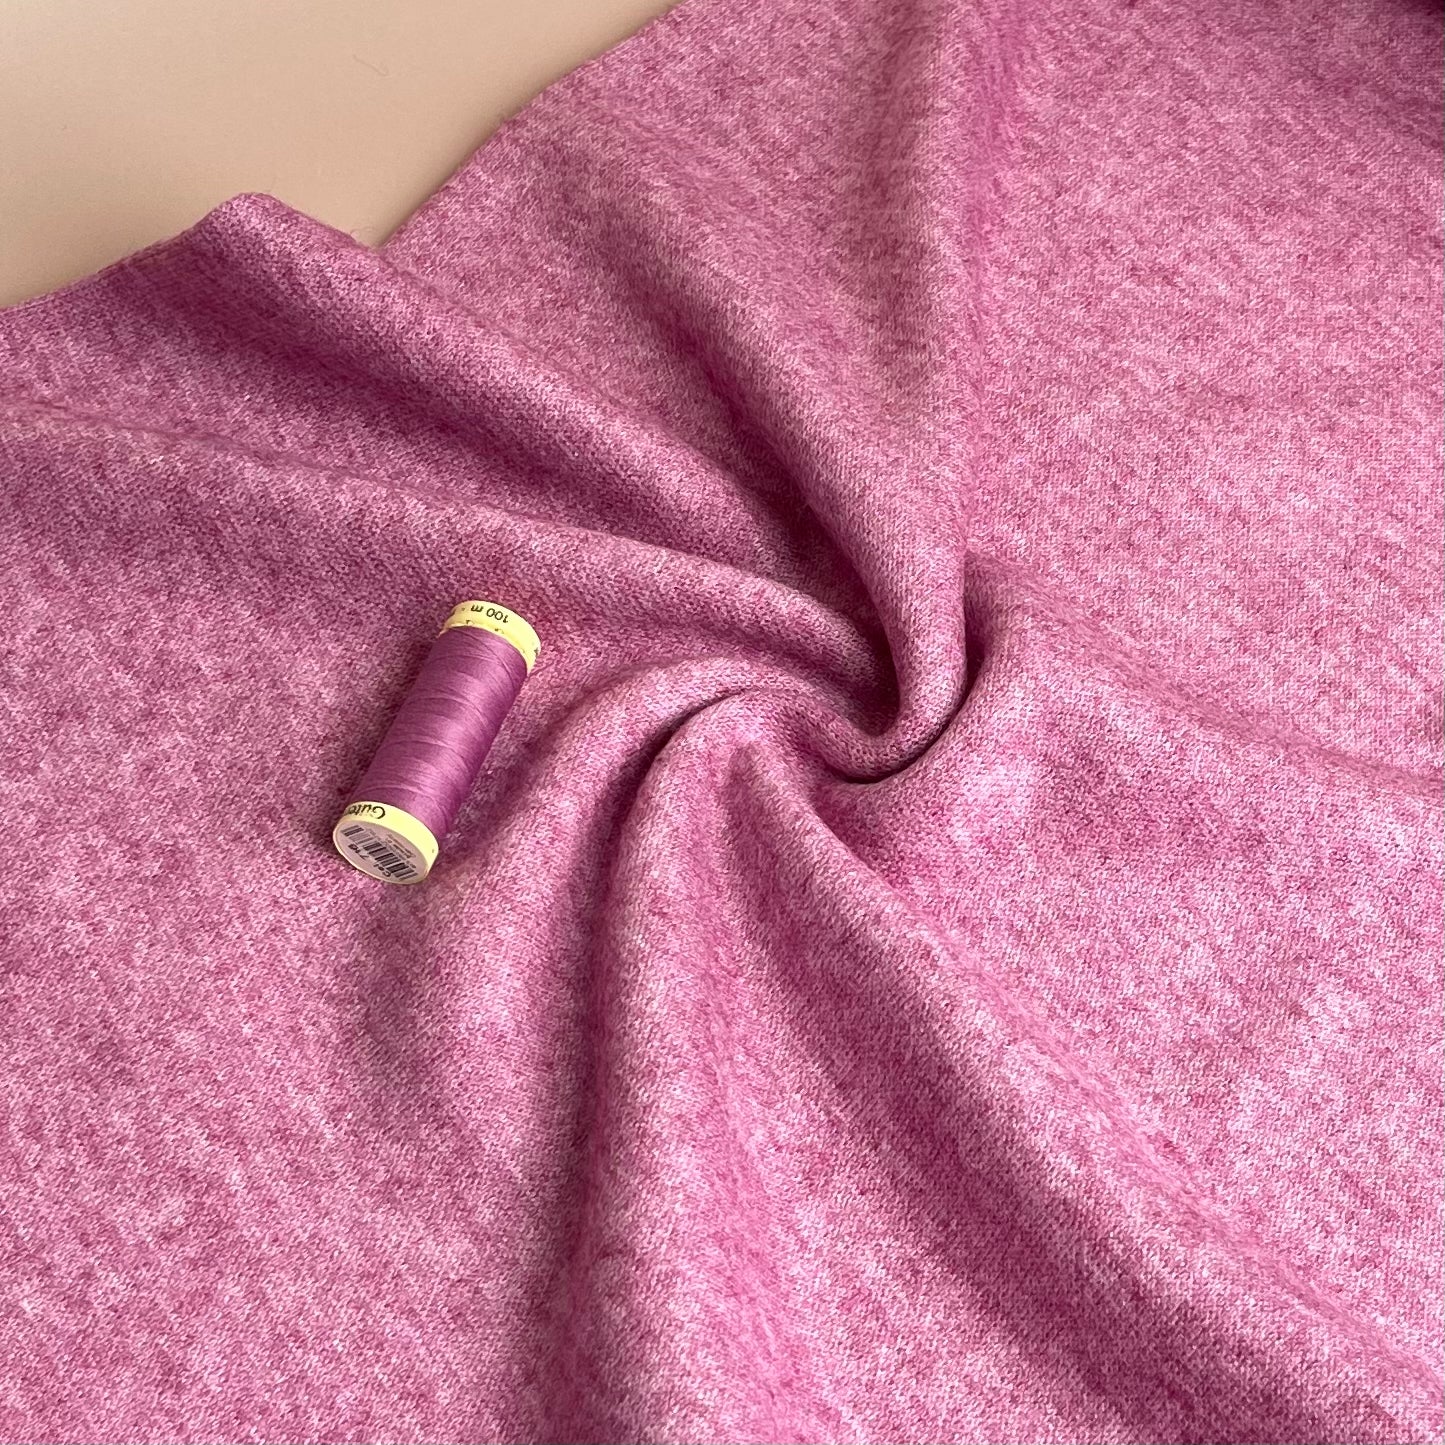 Snug Viscose Blend Sweater Knit in Cerise Melange